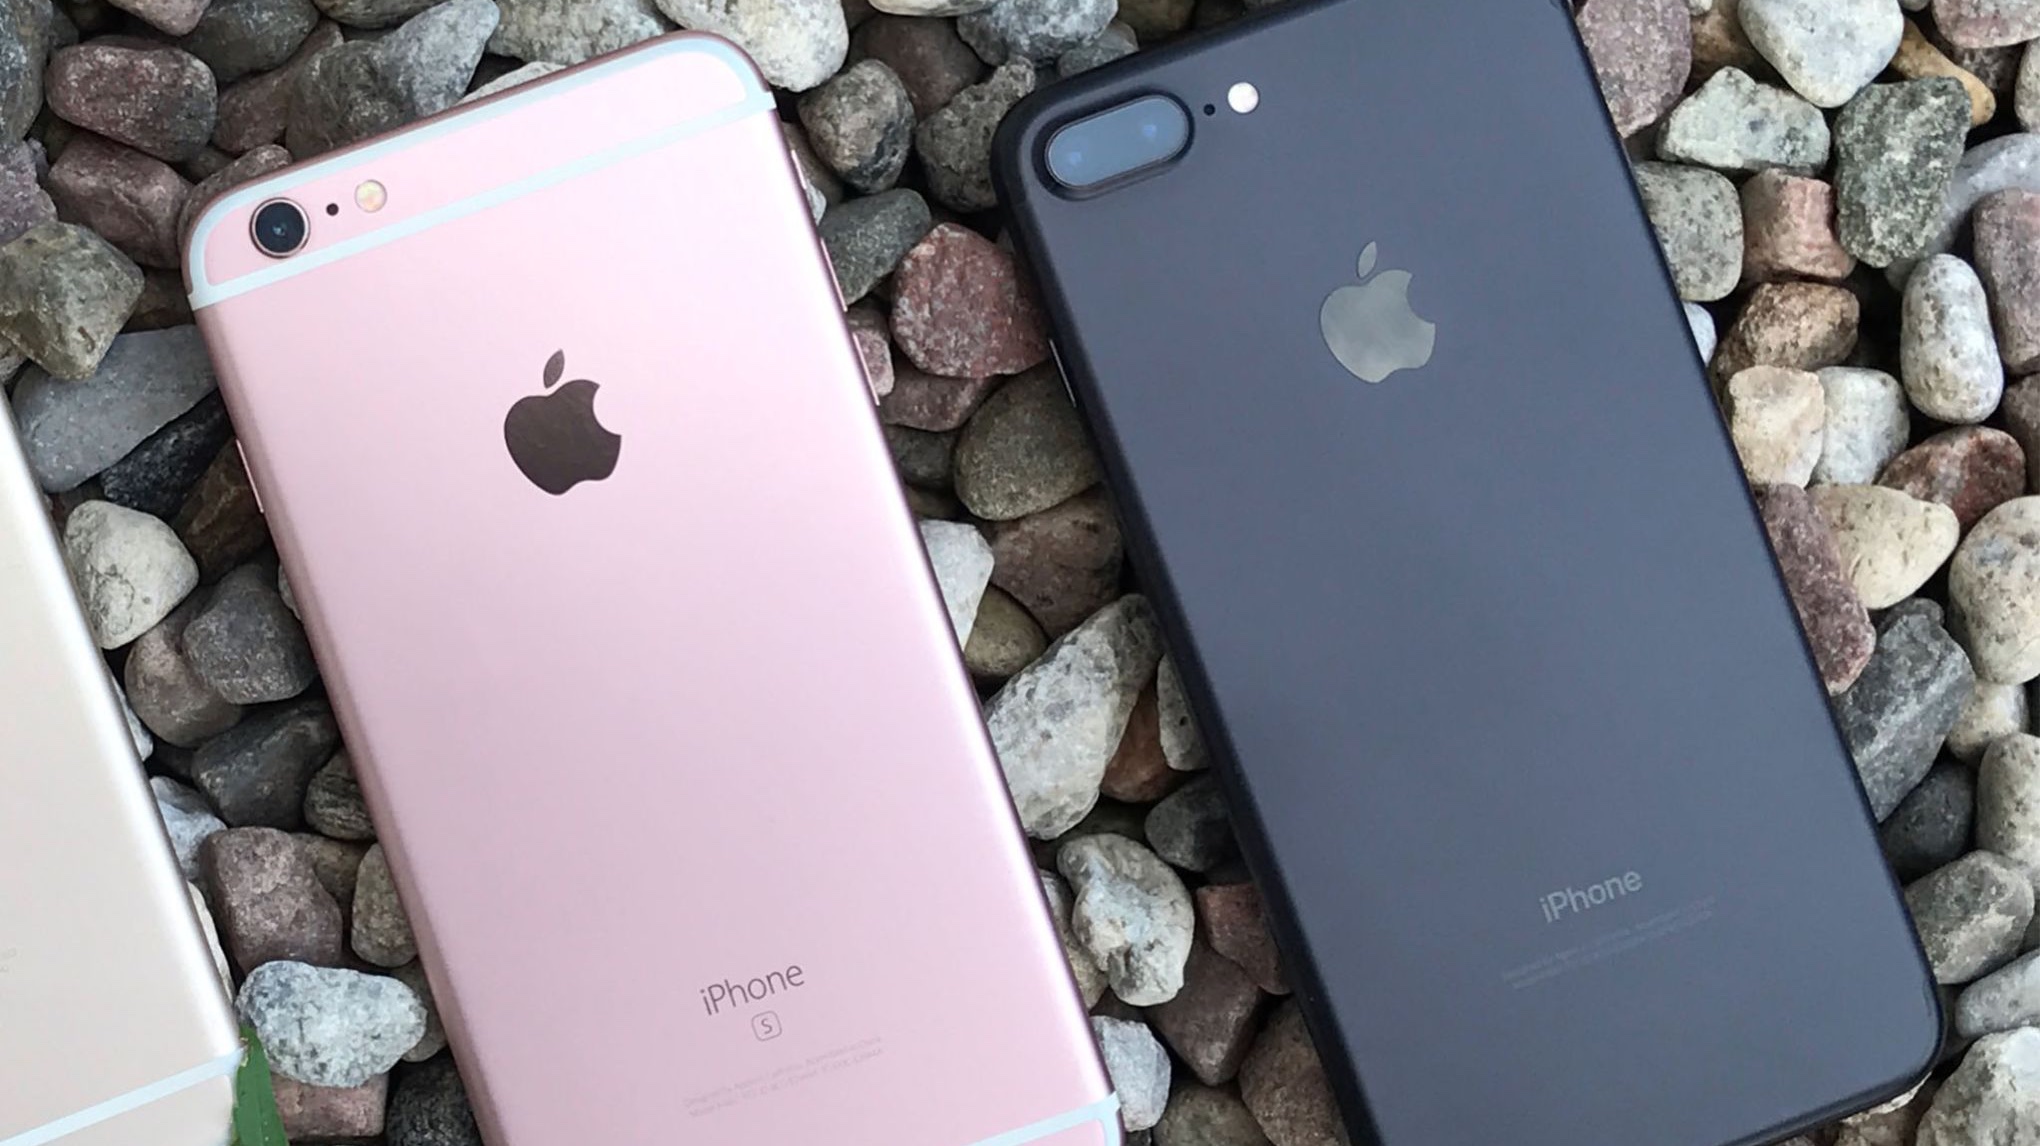 iPhone 6s emas mawar dan iPhone 7 hitam